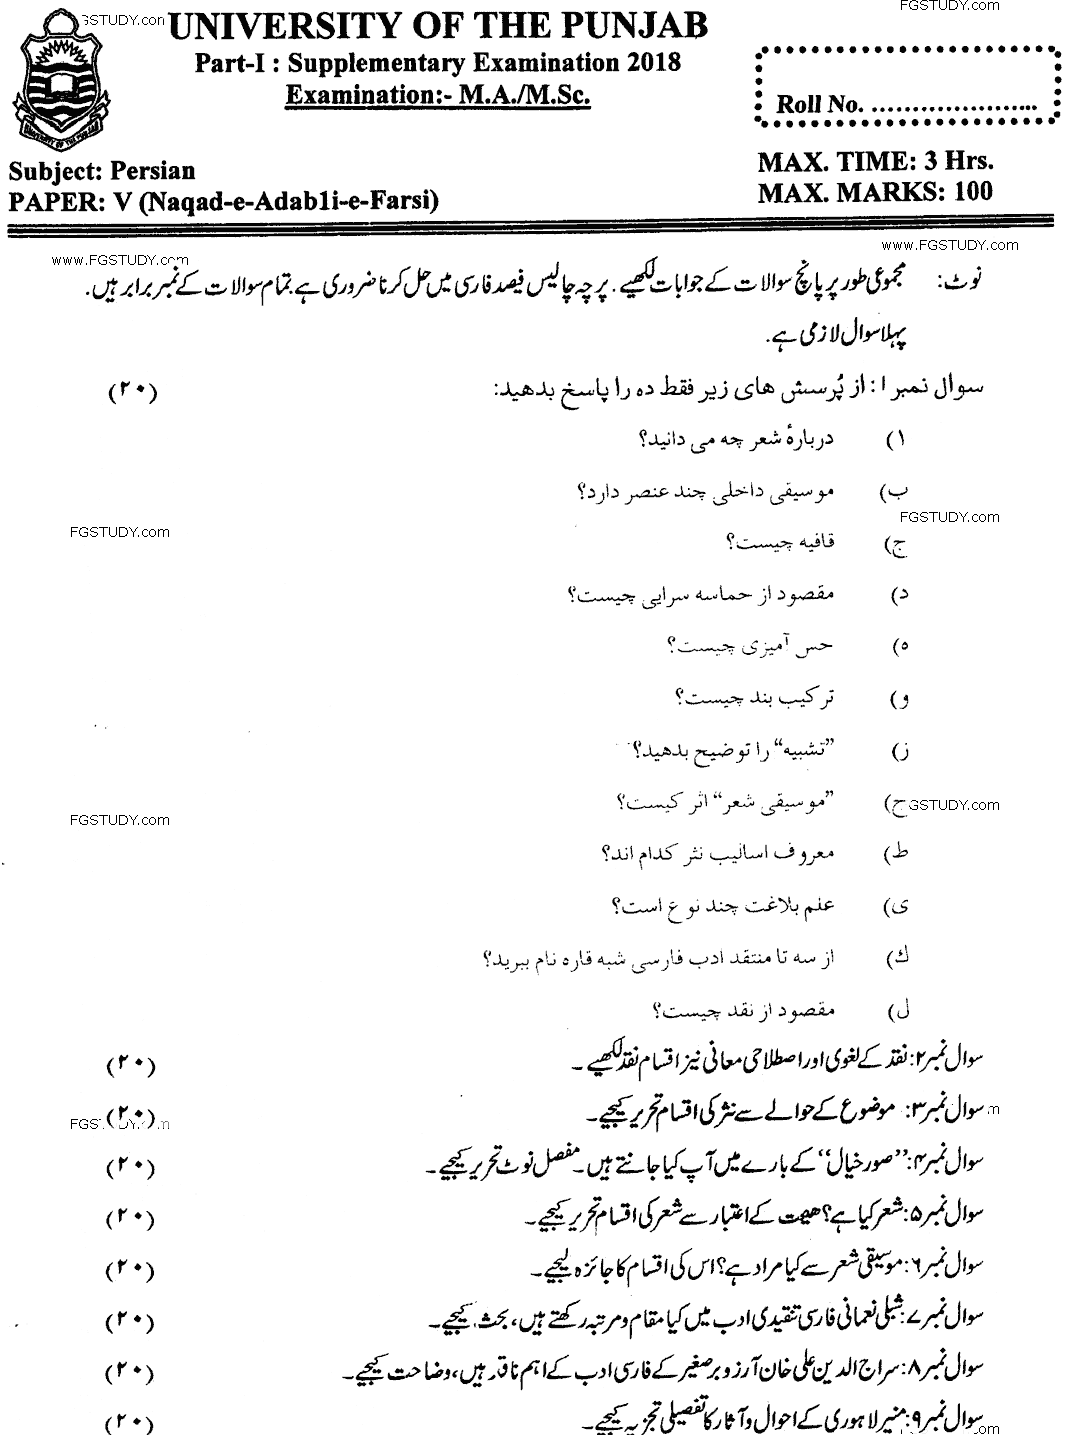 Ma Part 1 Persian Naqad E Adebi E Farsi Past Paper 2018 Punjab University